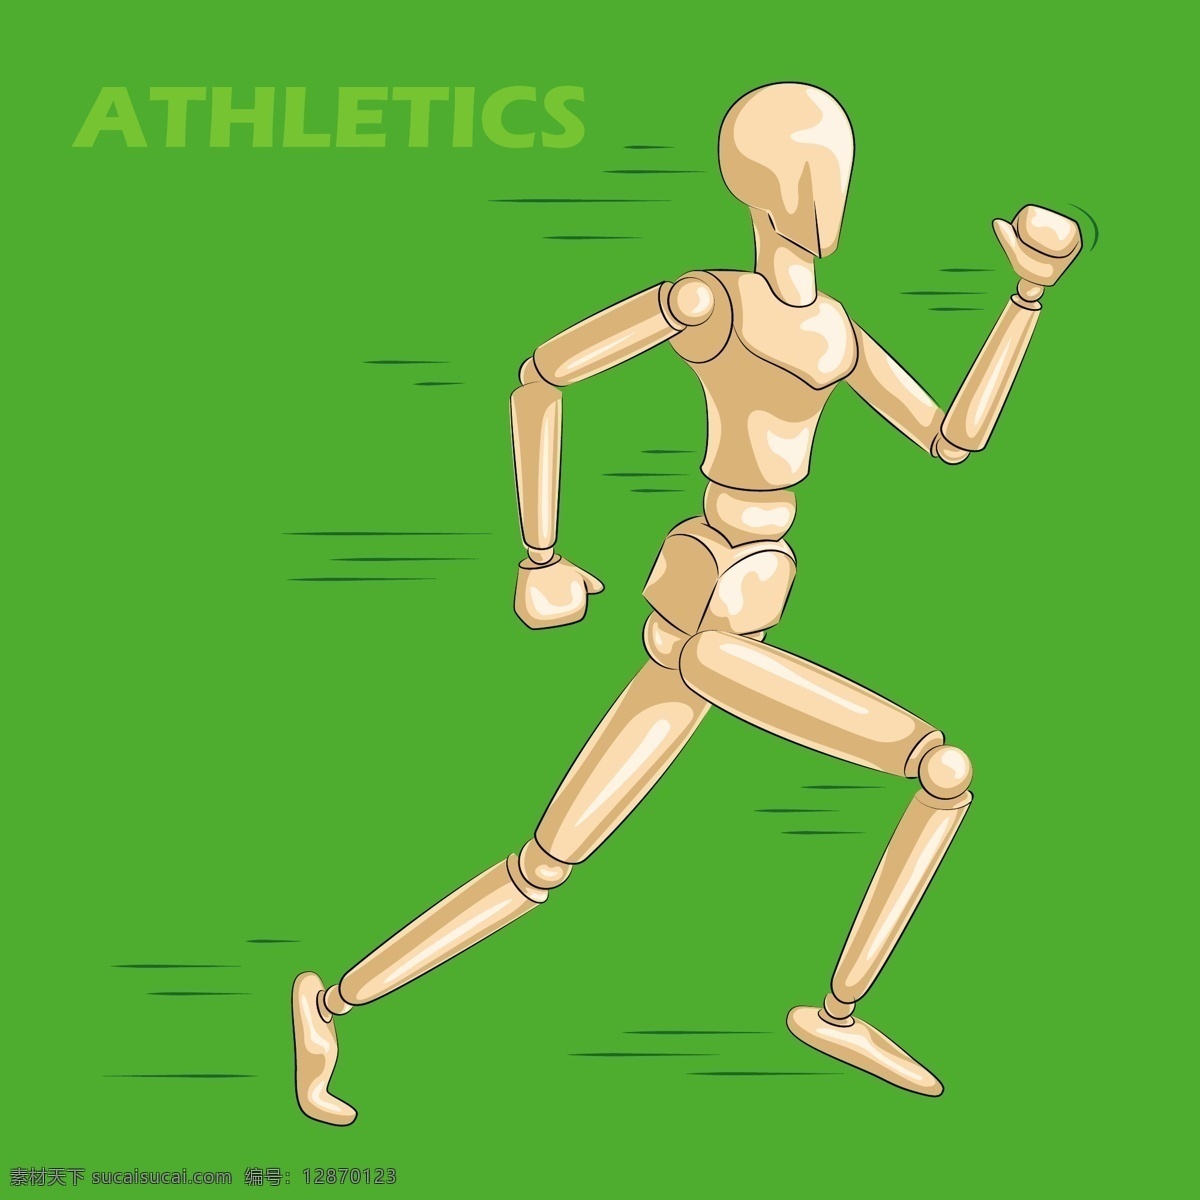 绿色 手绘 田径运动 卡通 矢量 背景 英文 跑步 马拉松 矢量素材 设计素材 平面素材